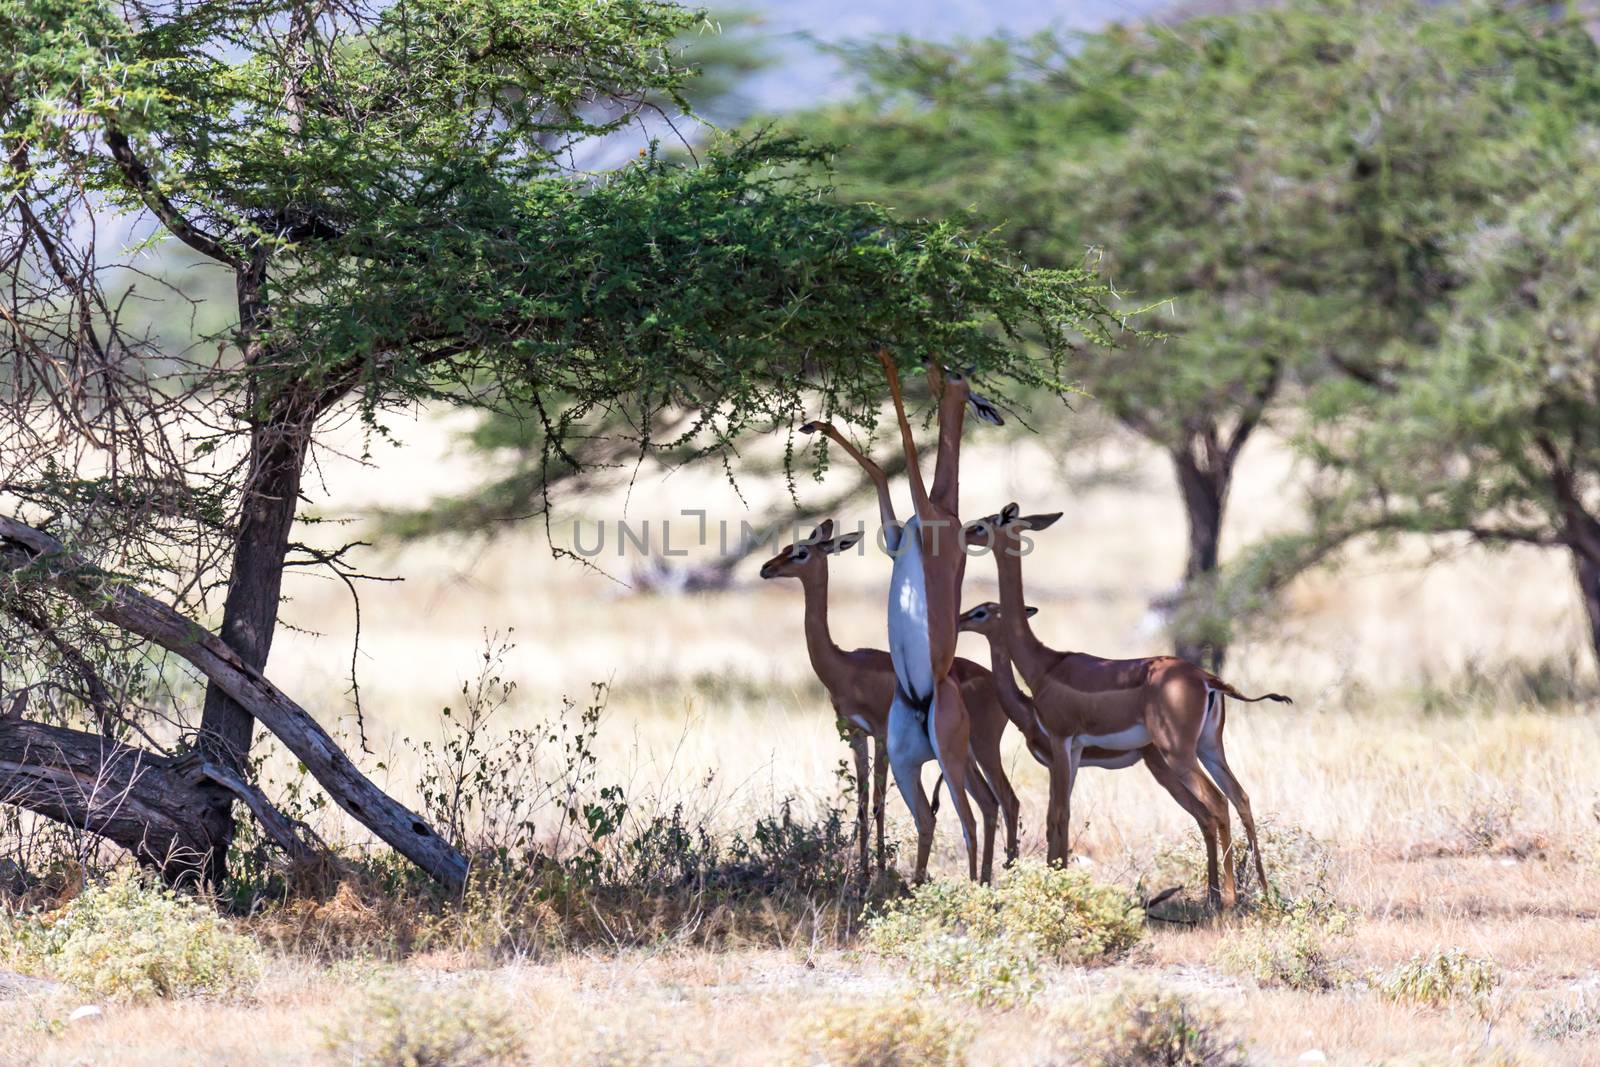 The gerenuk in the kenyan savanna looking for food